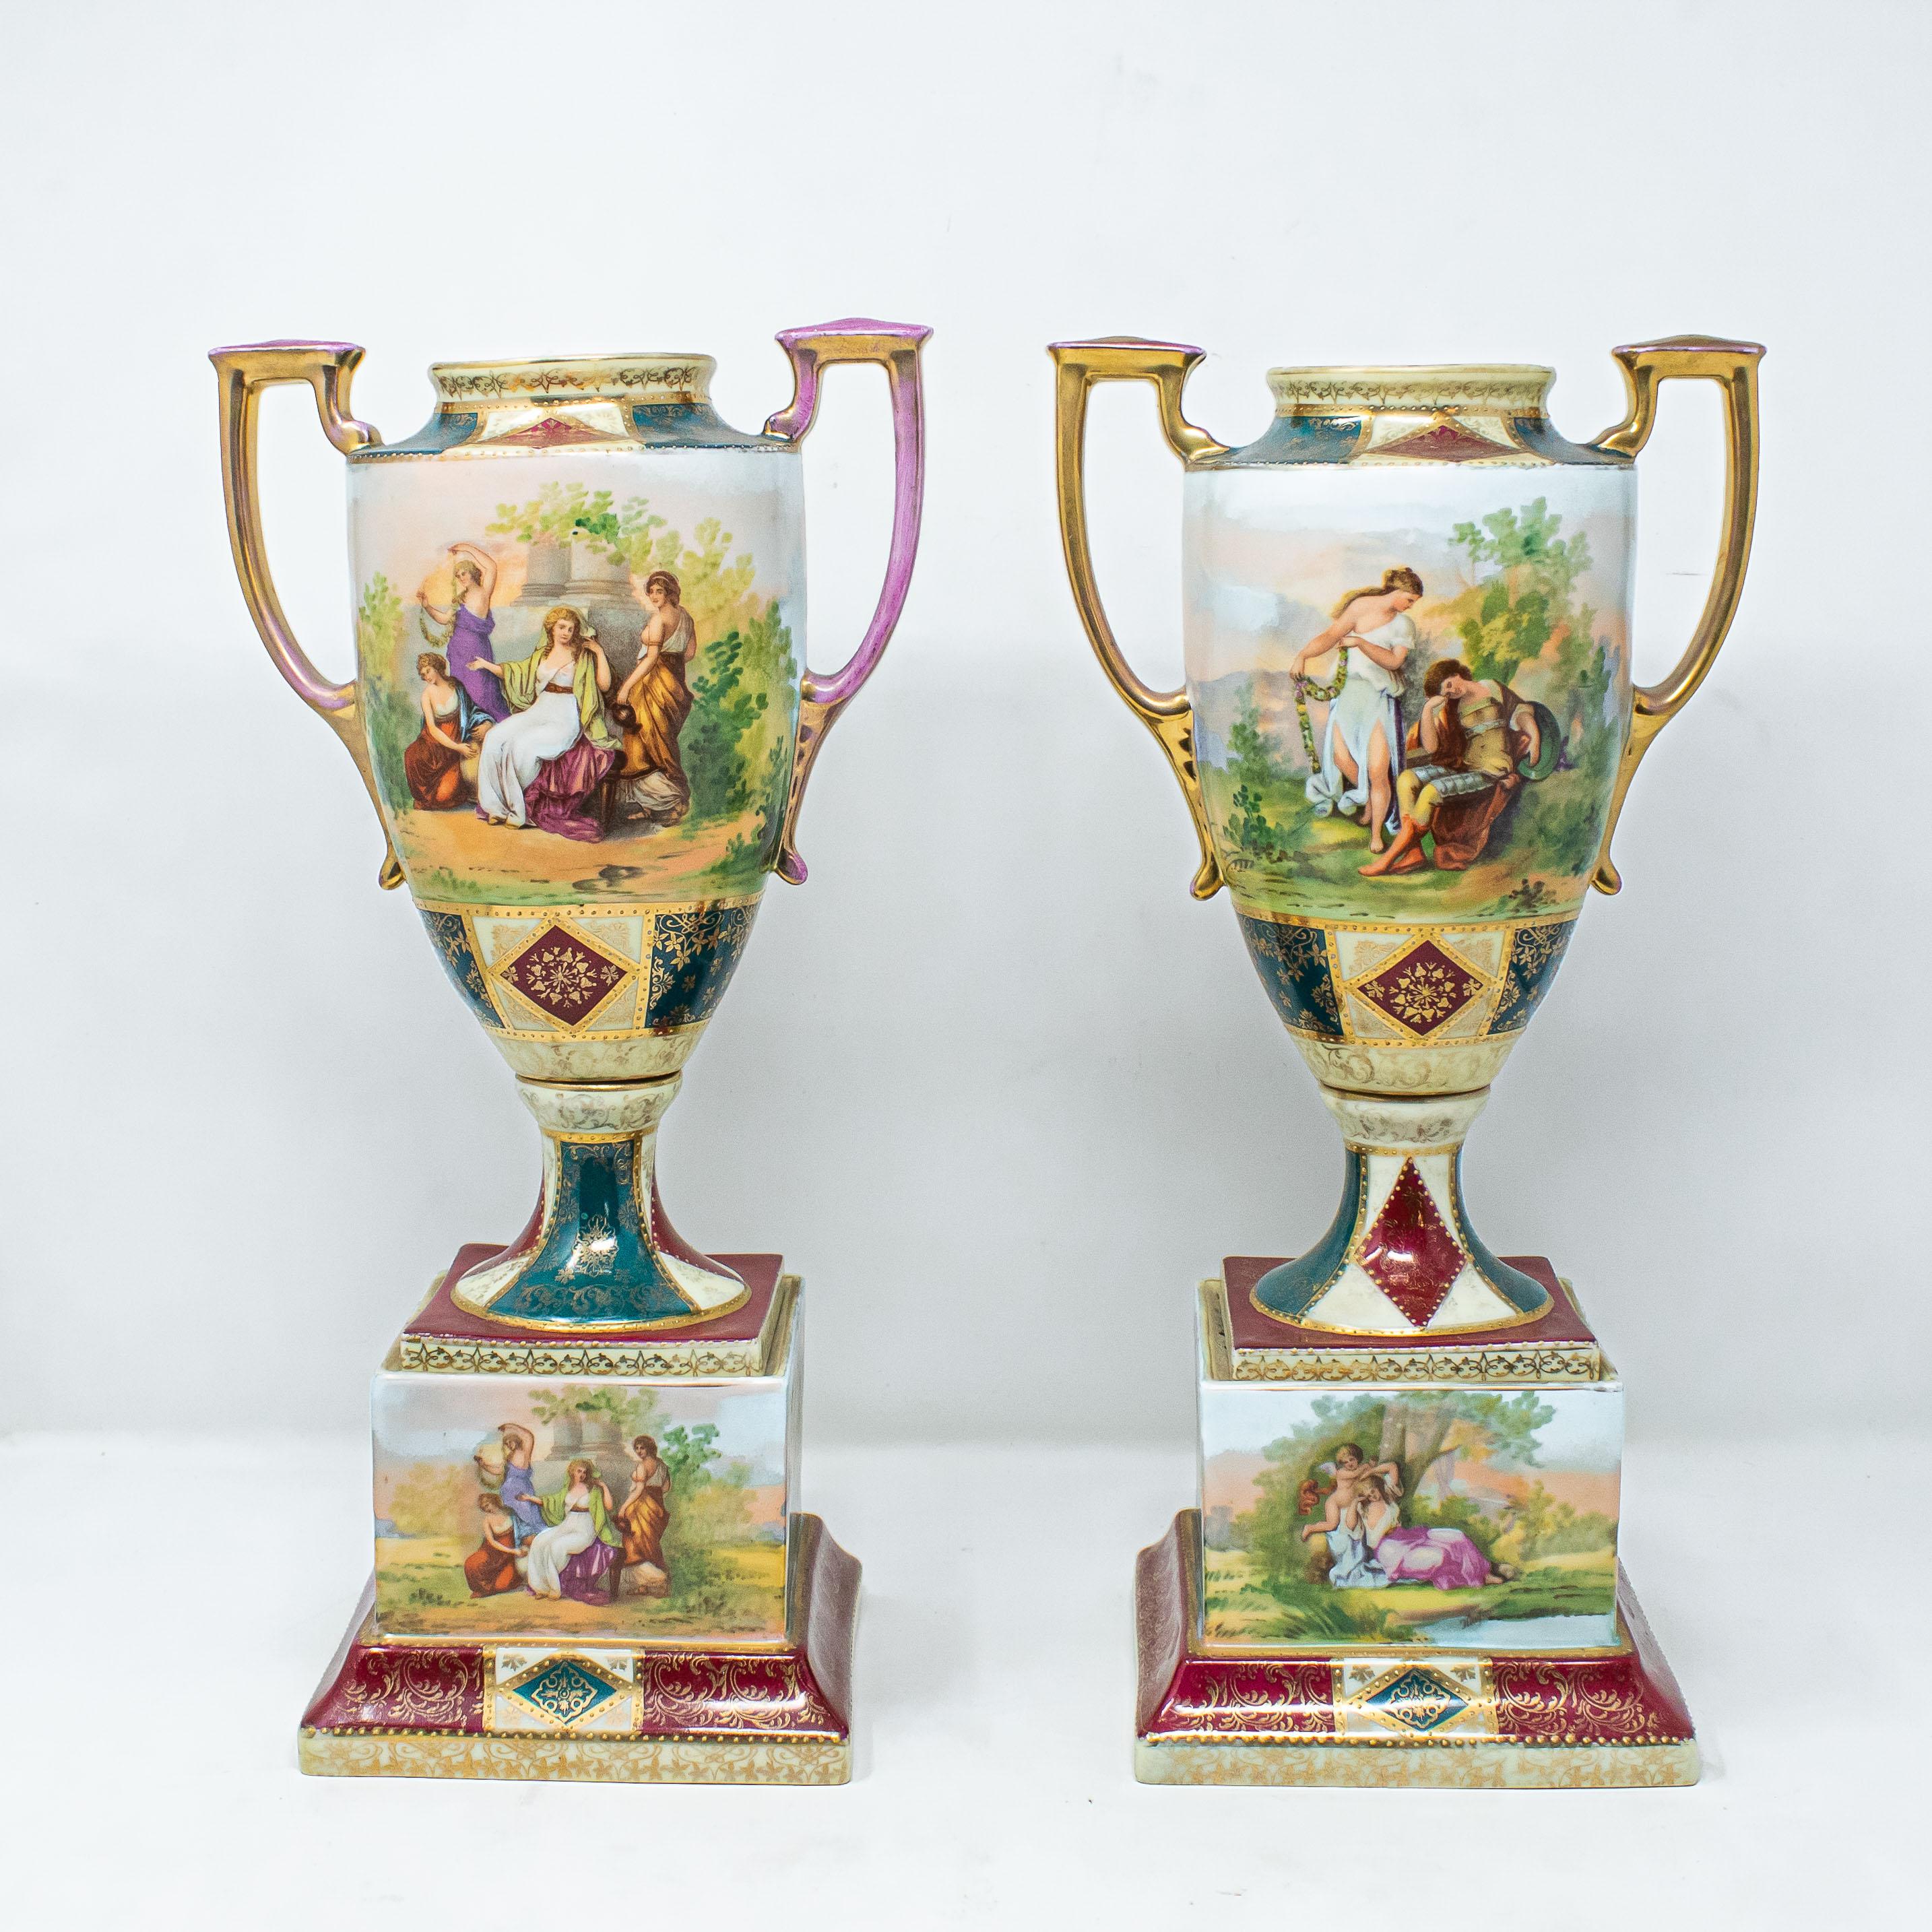 19. Jahrhundert, Werkstatt Bloch

Vasen-Paar

(2) Porzellan, cm H. 36

Die beiden Porzellanvasen in Form einer Amphore mit Henkeln sind der Werkstatt Bloch zuzuordnen, die in der Stadt Eichwald in Österreich tätig war: Die beiden Vasen sind